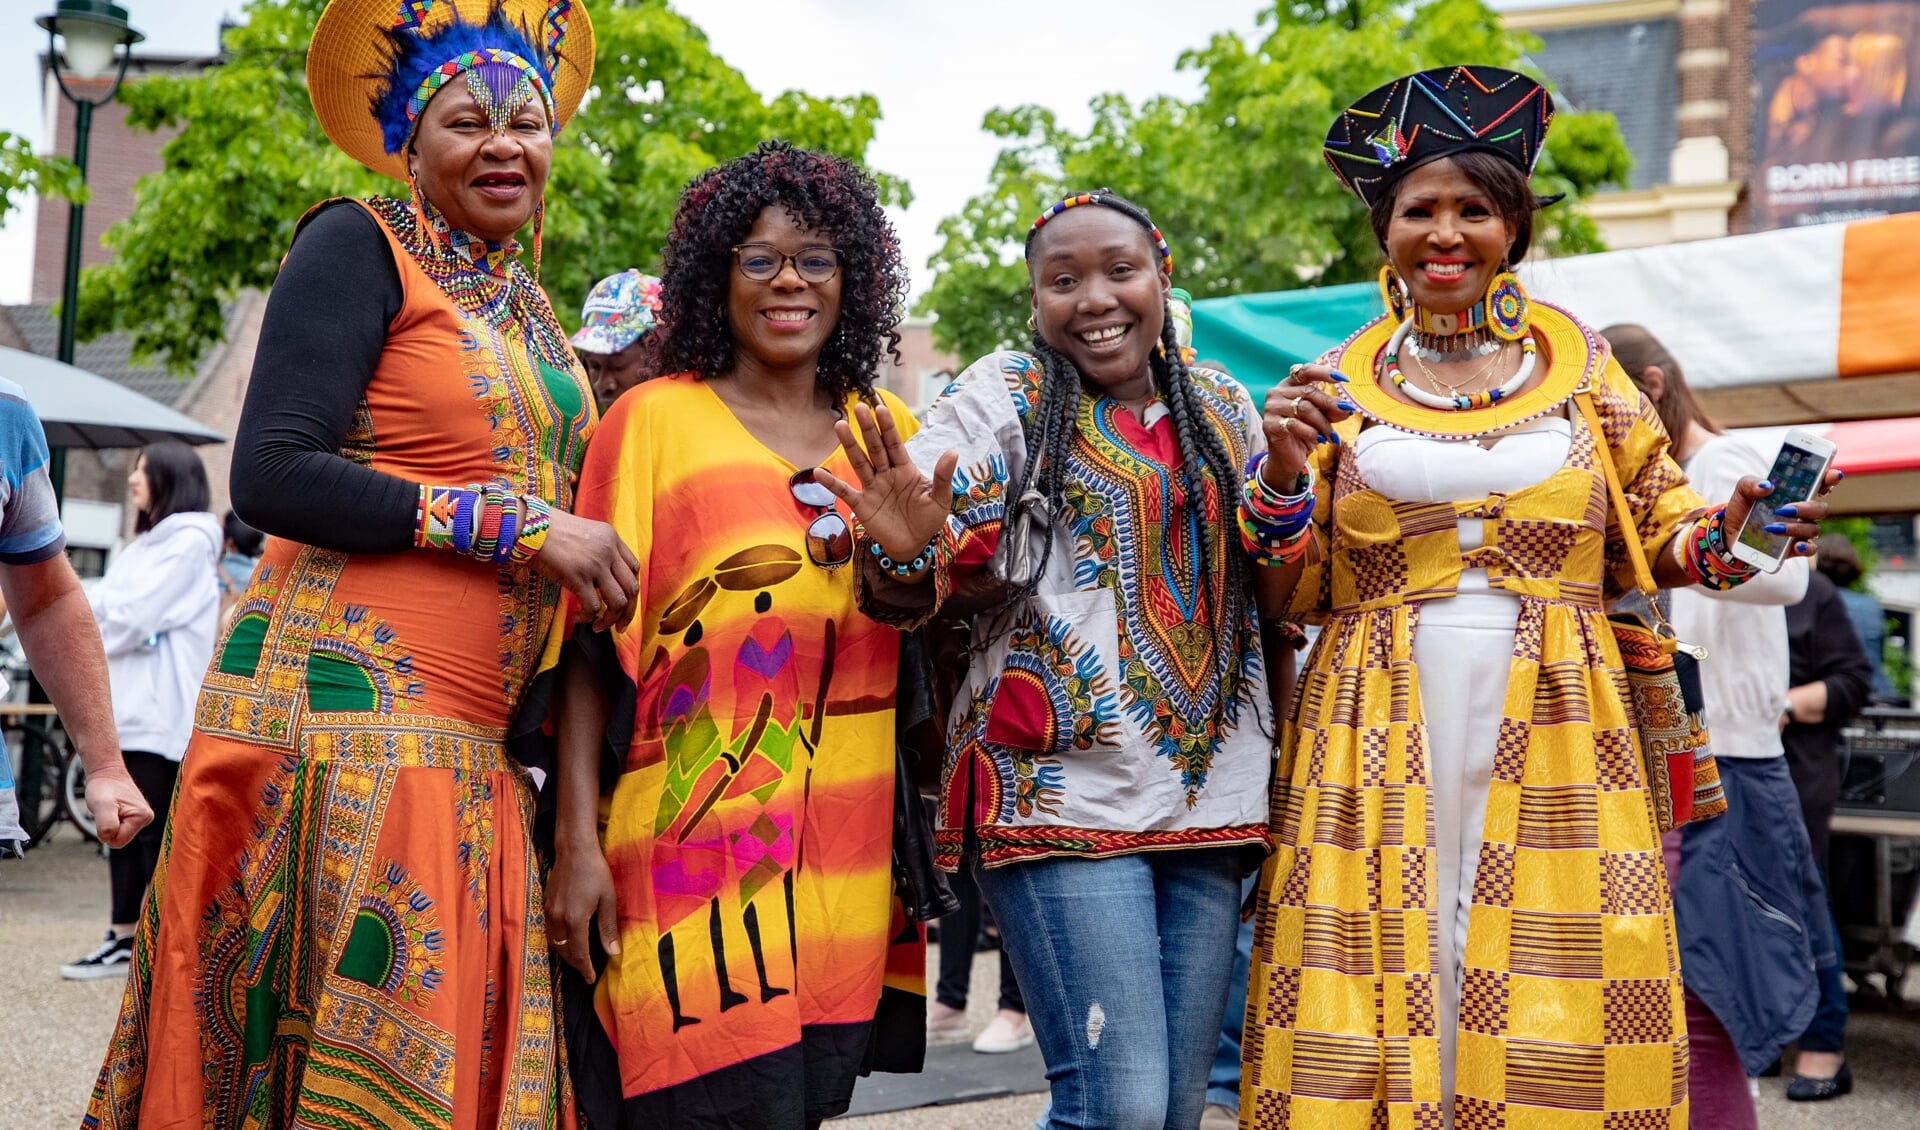 Op 30 mei is de tweede editie van de Afrikadag.